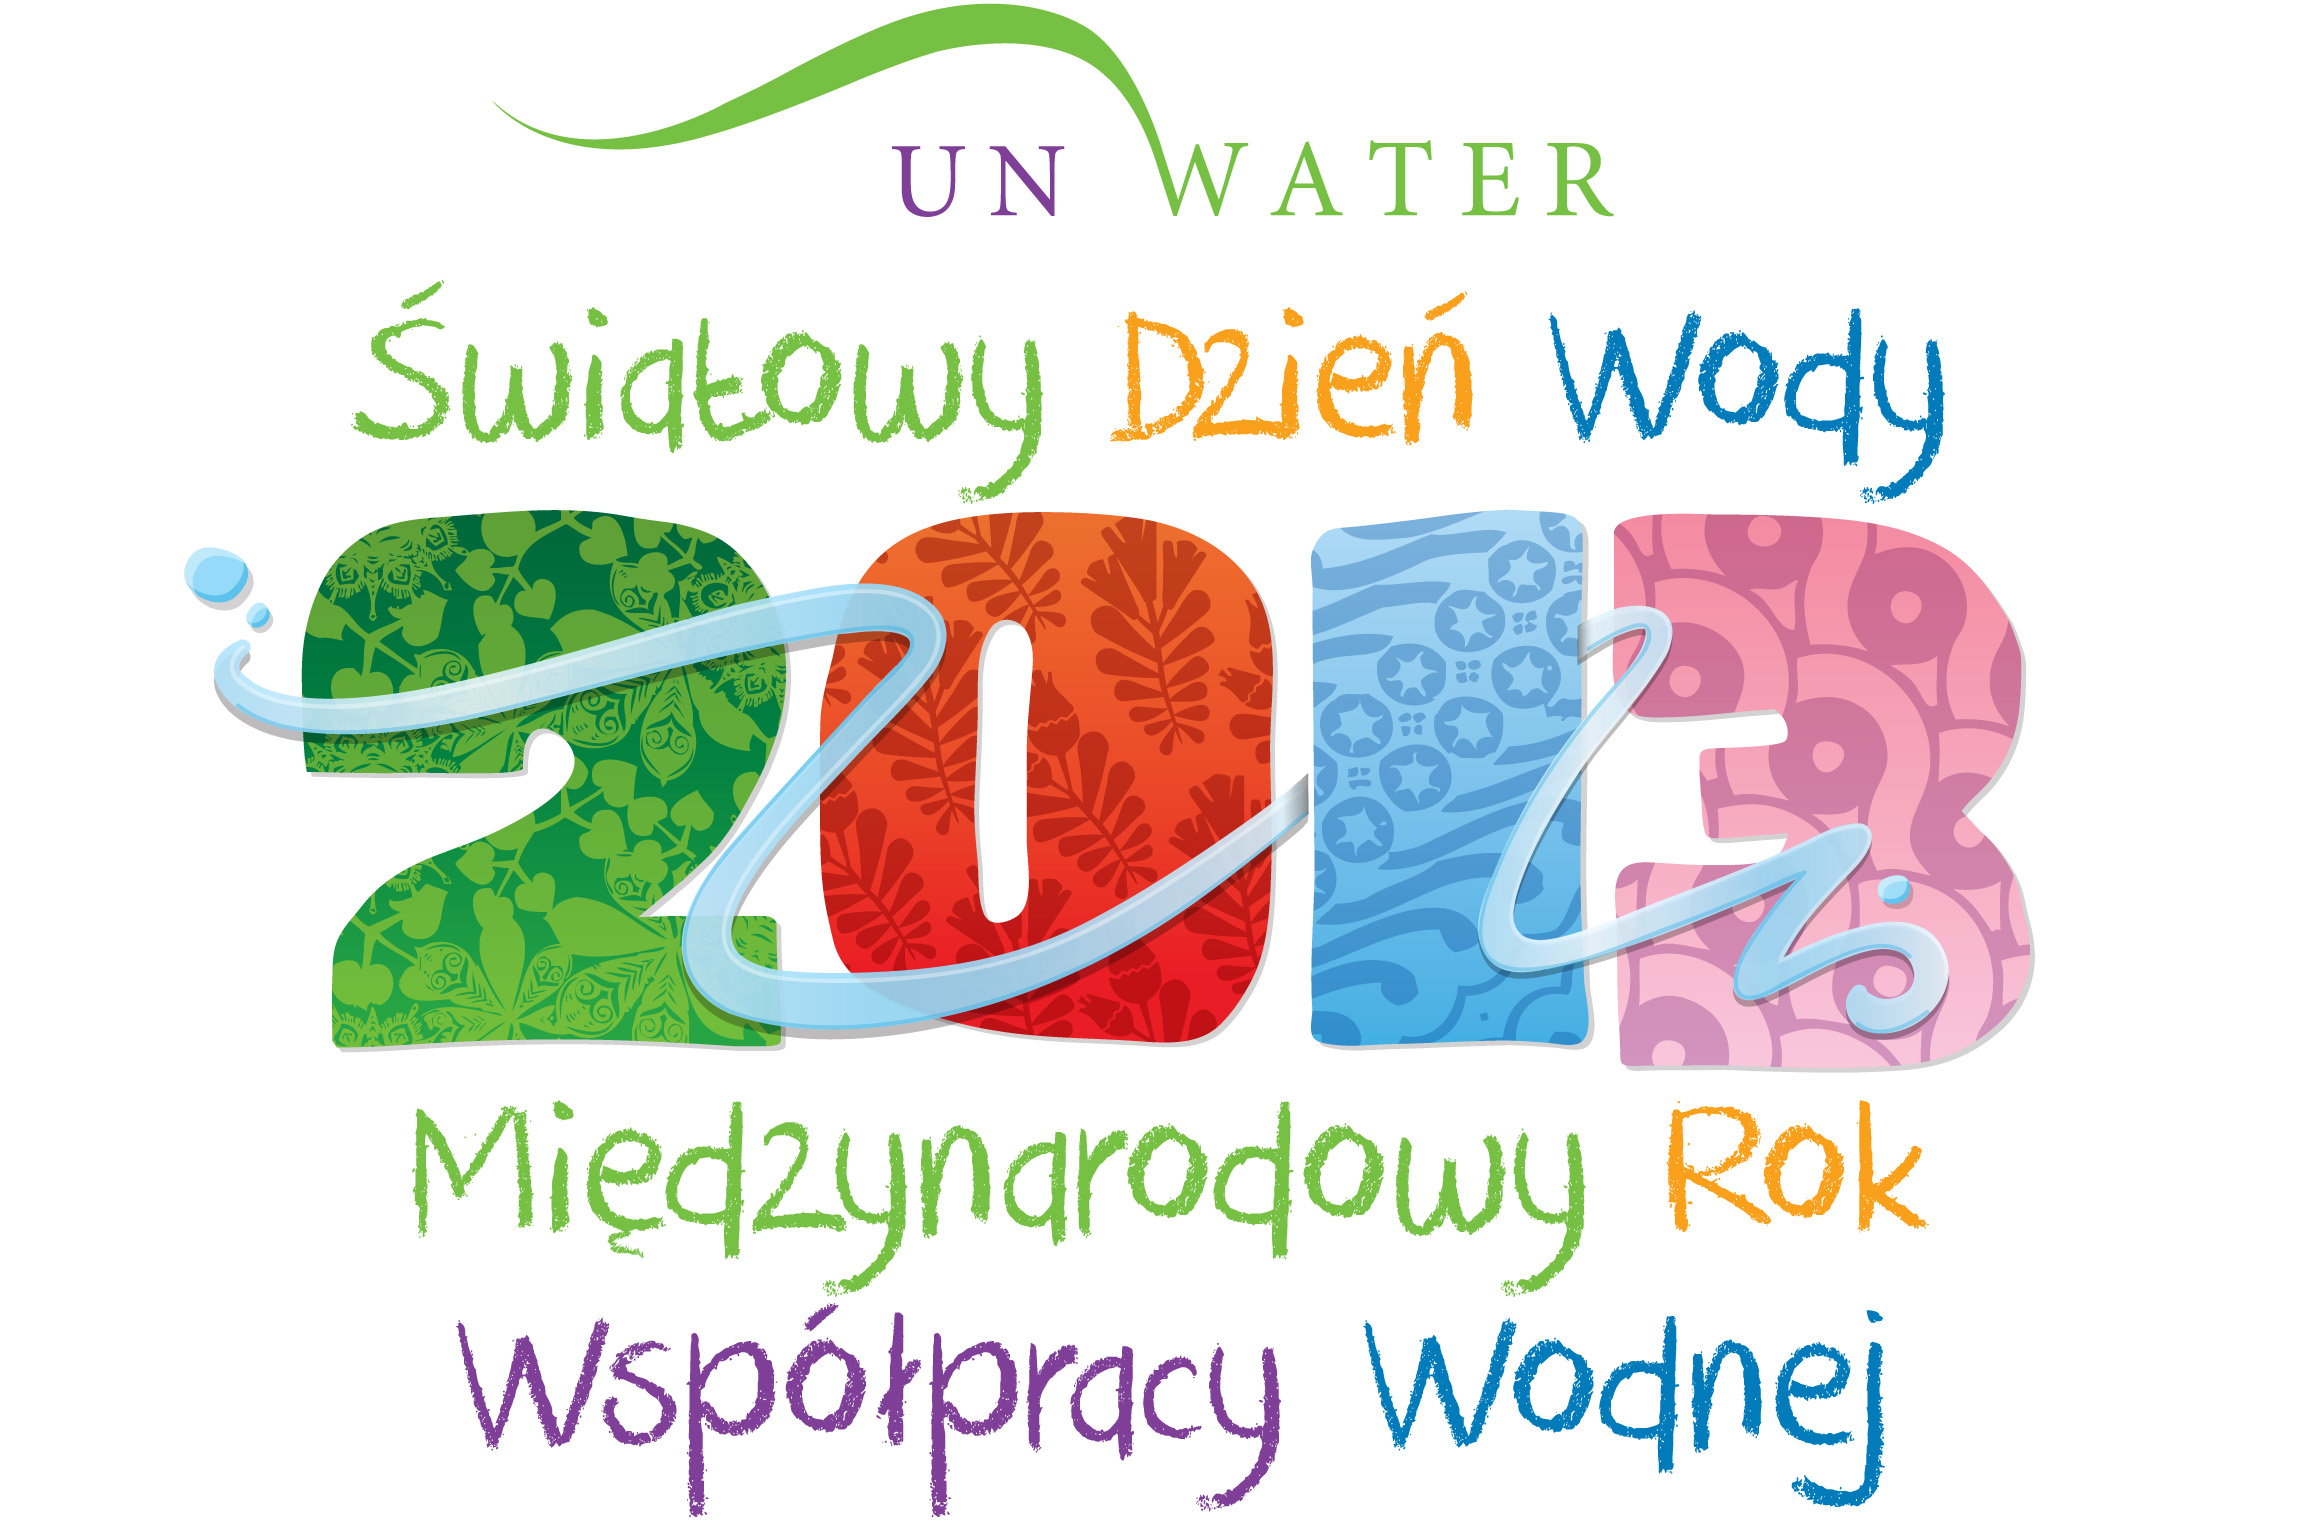 Międzynarodowy Rok Współpracy w Dziedzinie Wody 2013